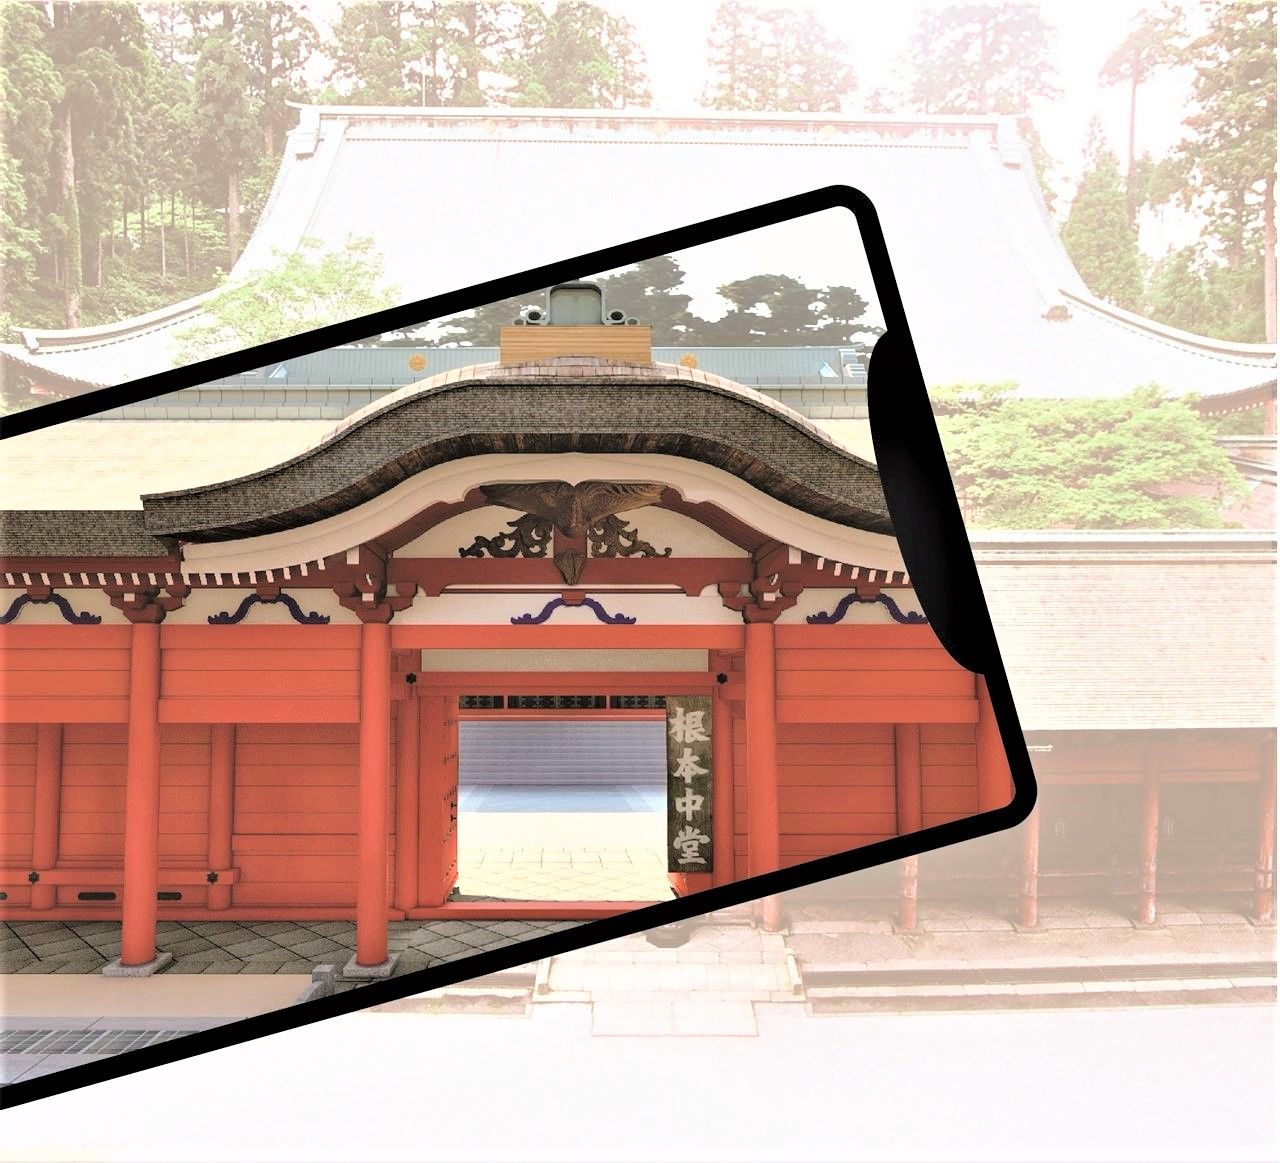 Al apuntar la cámara integrada del teléfono inteligente a cualquiera de los siete puntos, se puede ver el exterior del Konponchūdō en colores vivos y los relieves grabados en madera de los pies restaurados vívidamente después de la finalización de las renovaciones importantes. (Imagen cortesía del templo Hieizan Enryaku-ji)